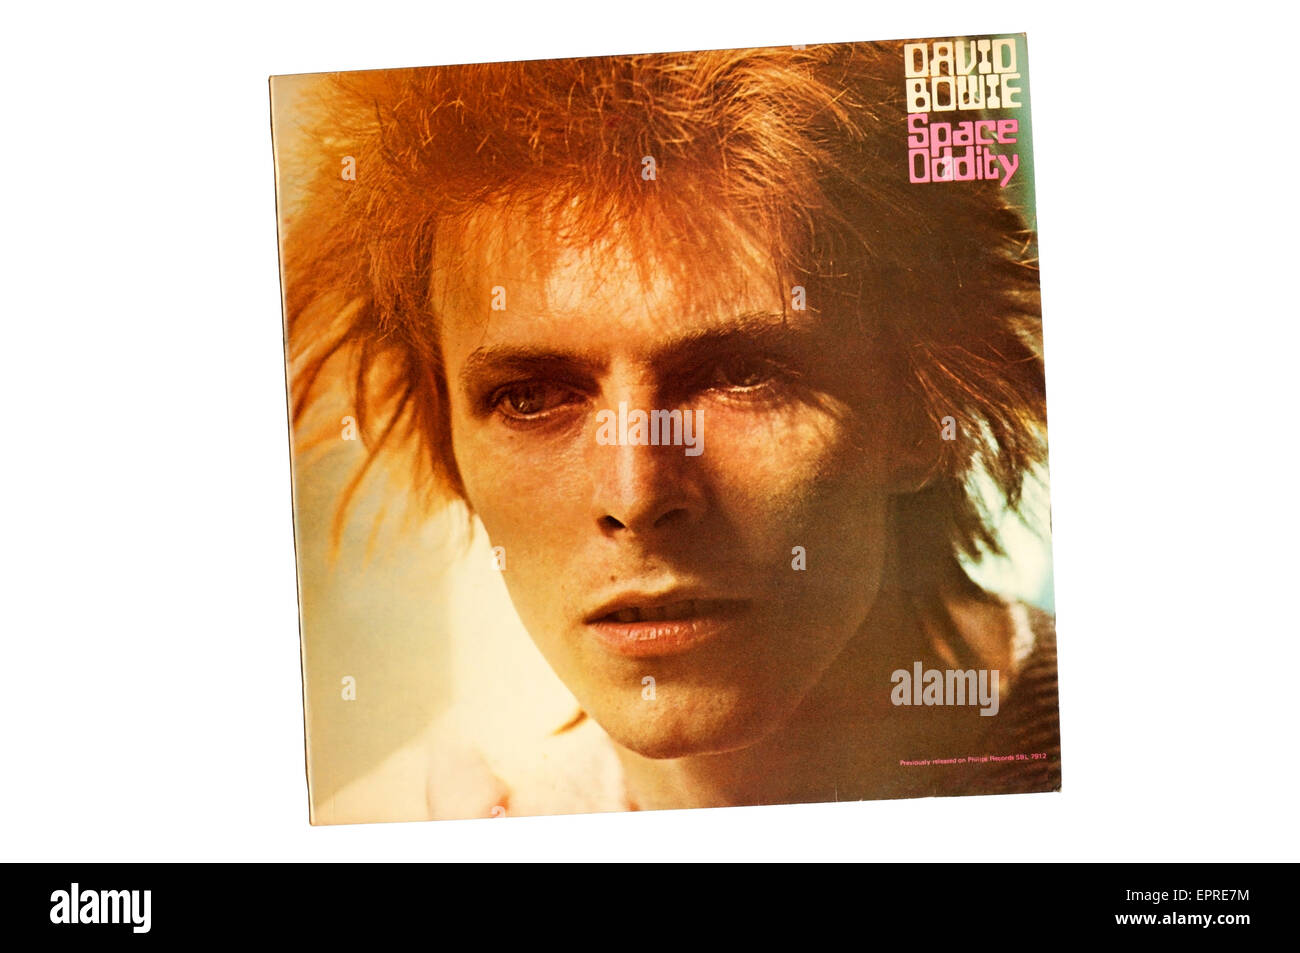 David Bowie o spazio stranezza è stato il secondo album in studio di musicista inglese David Bowie. Vedere la descrizione per i dettagli. Foto Stock